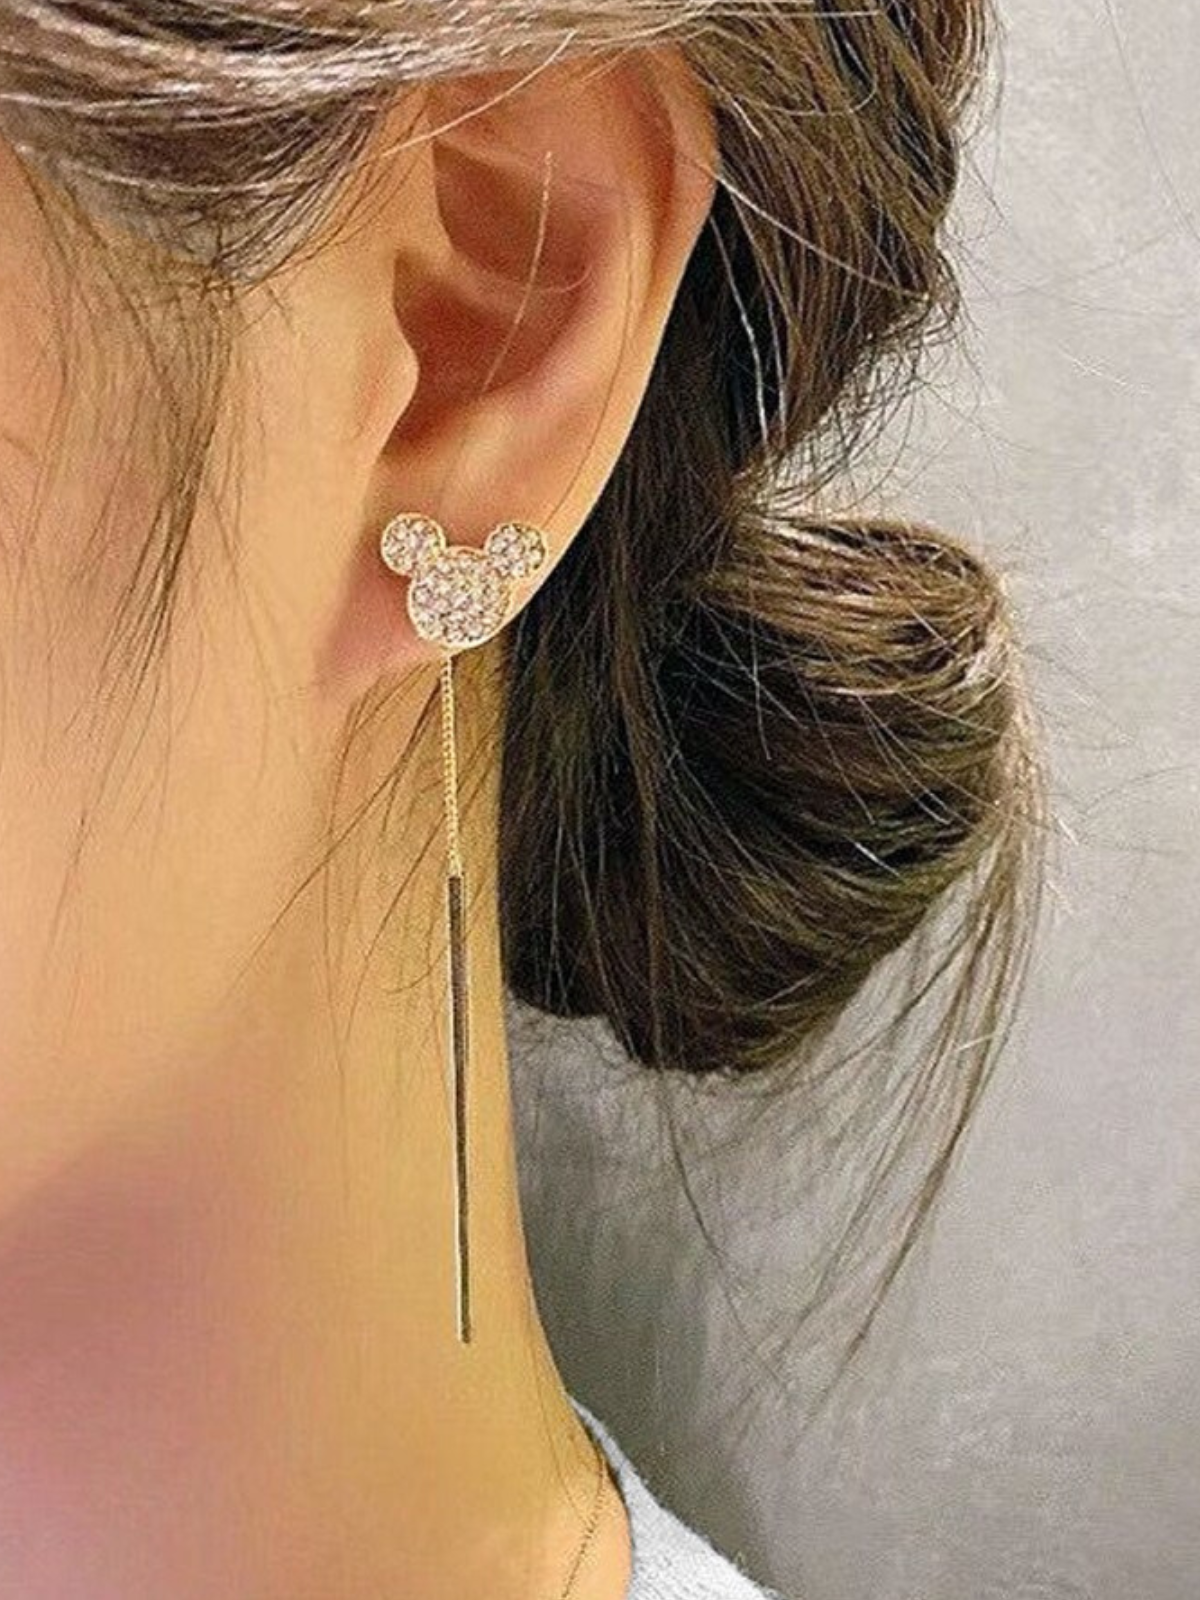 Mia Belle Girls Dangle Earrings | Girls Accessories